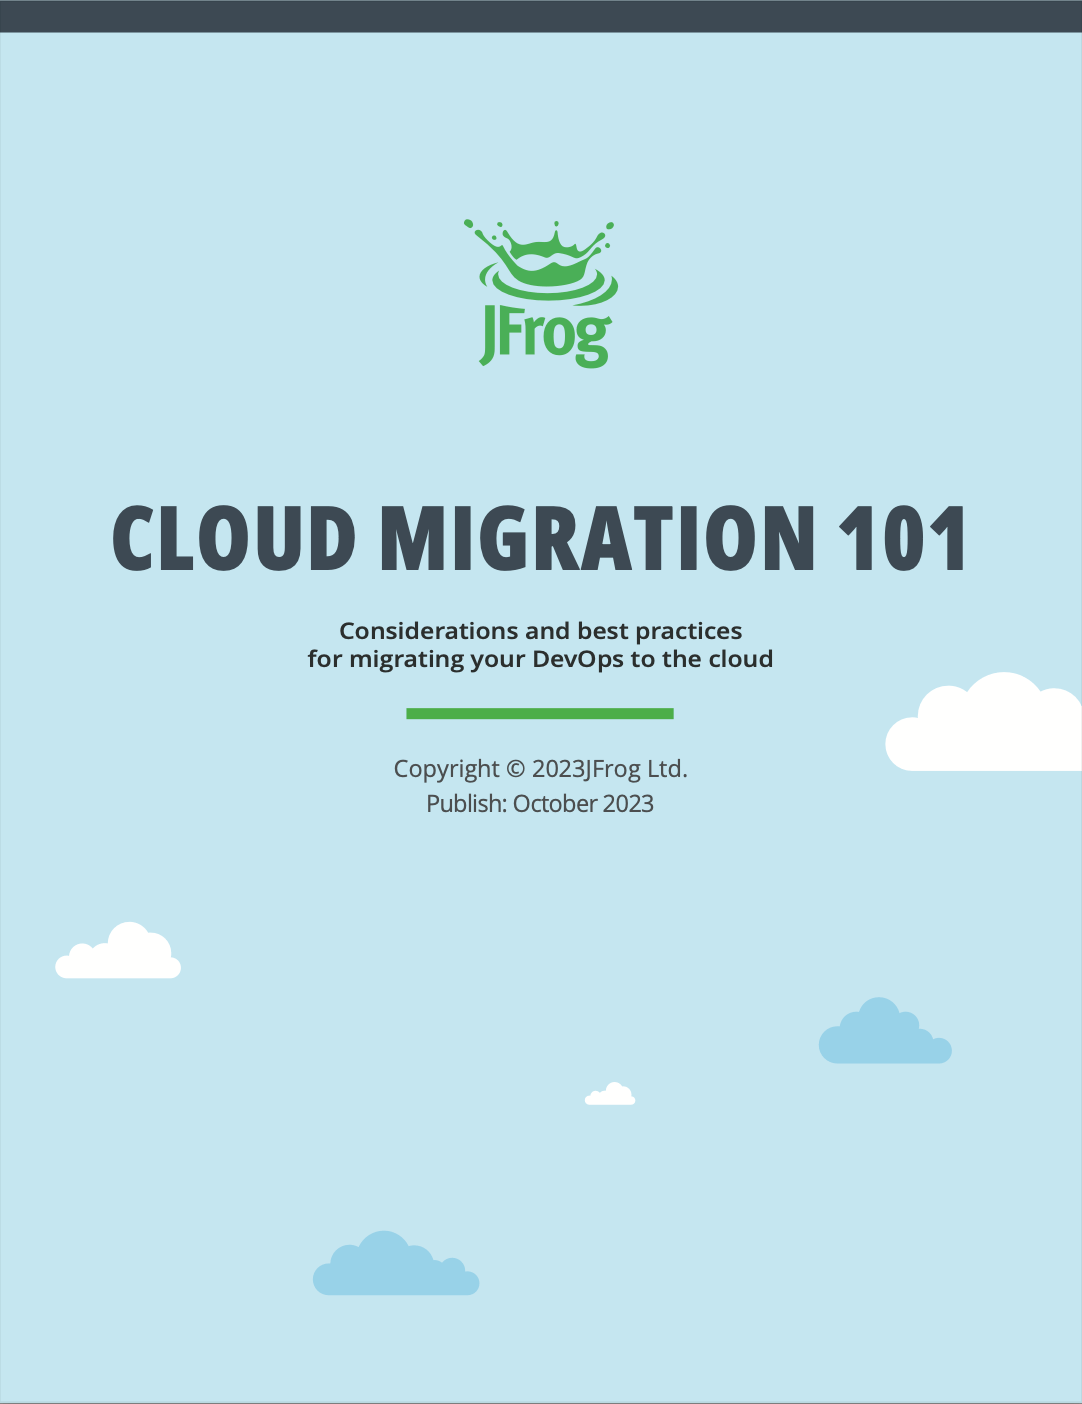 Cloud Migration 101 cover image